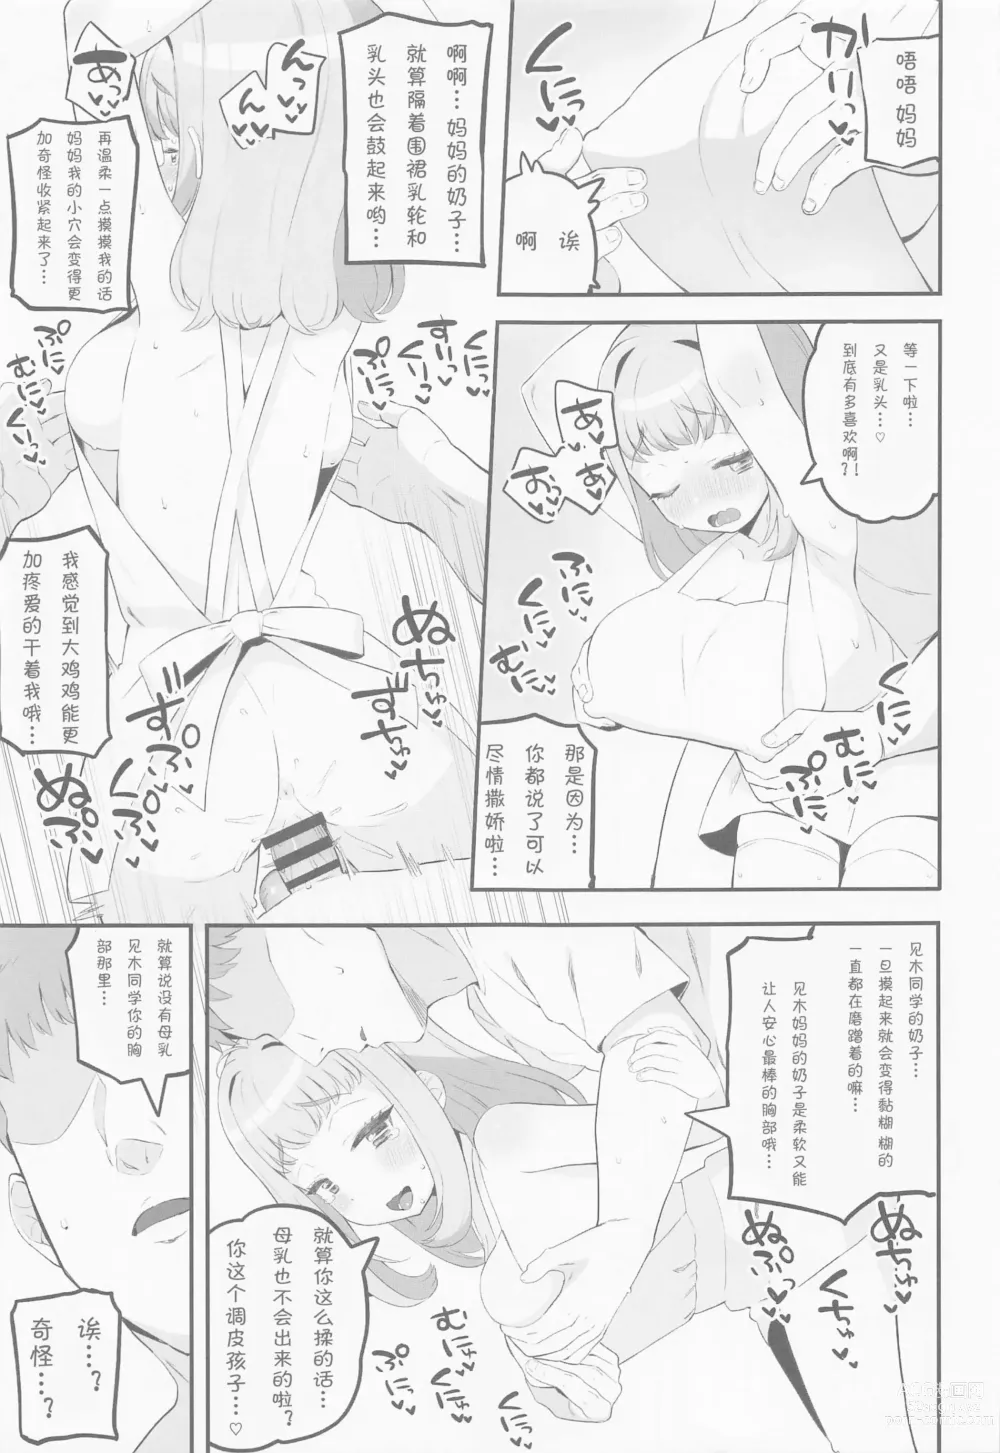 Page 12 of doujinshi Mamauri Milky no KodoOji Dekiai Diary